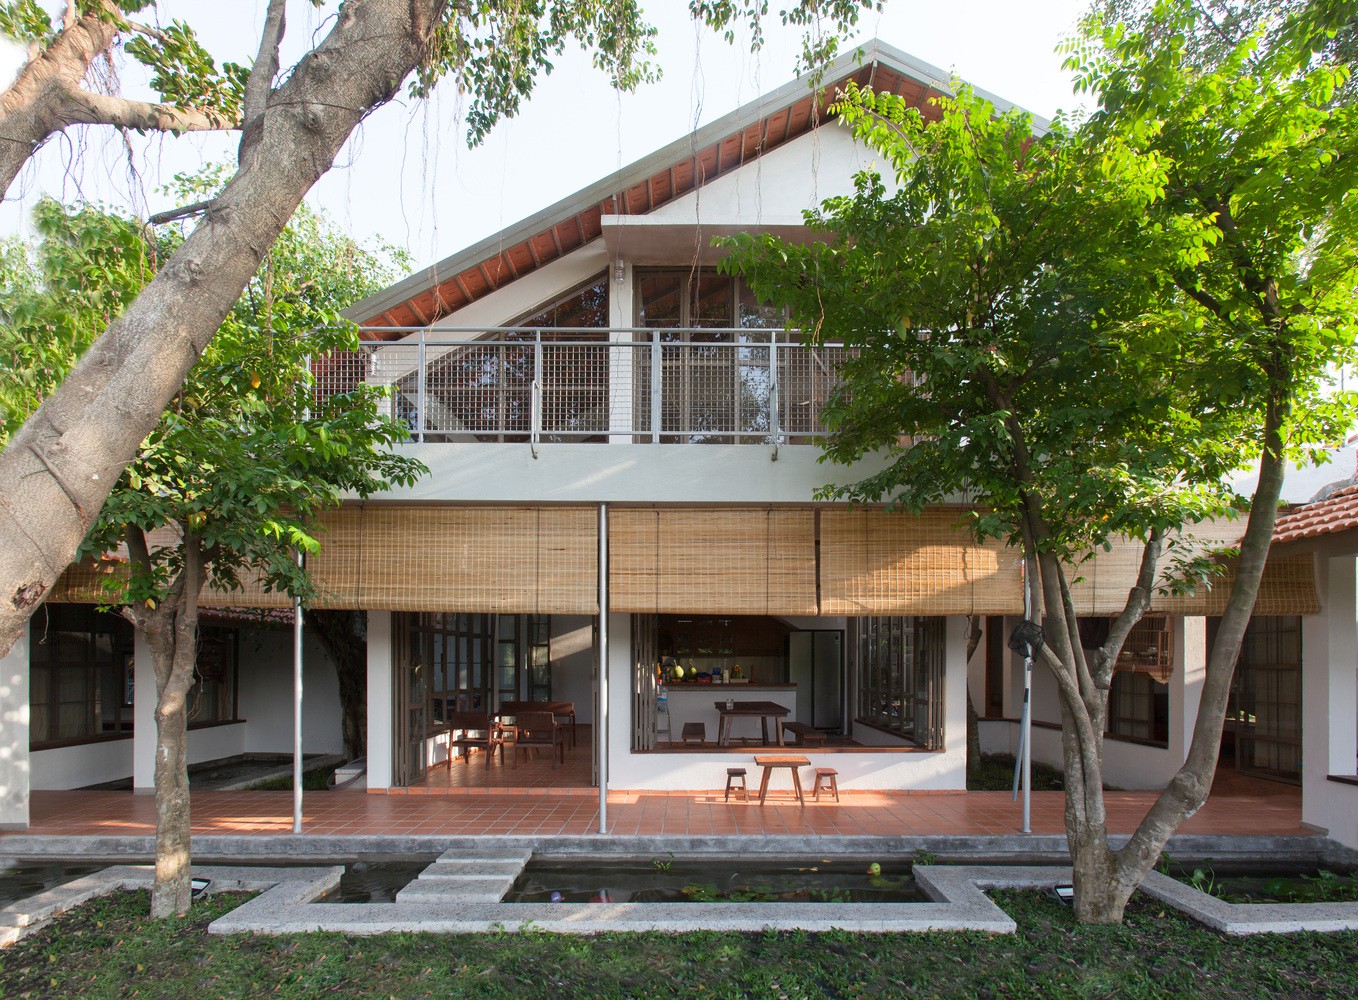 

Bình Dương House vinh dự nhận được "Giải thưởng kiến trúc quốc gia 2020 - 2021"
